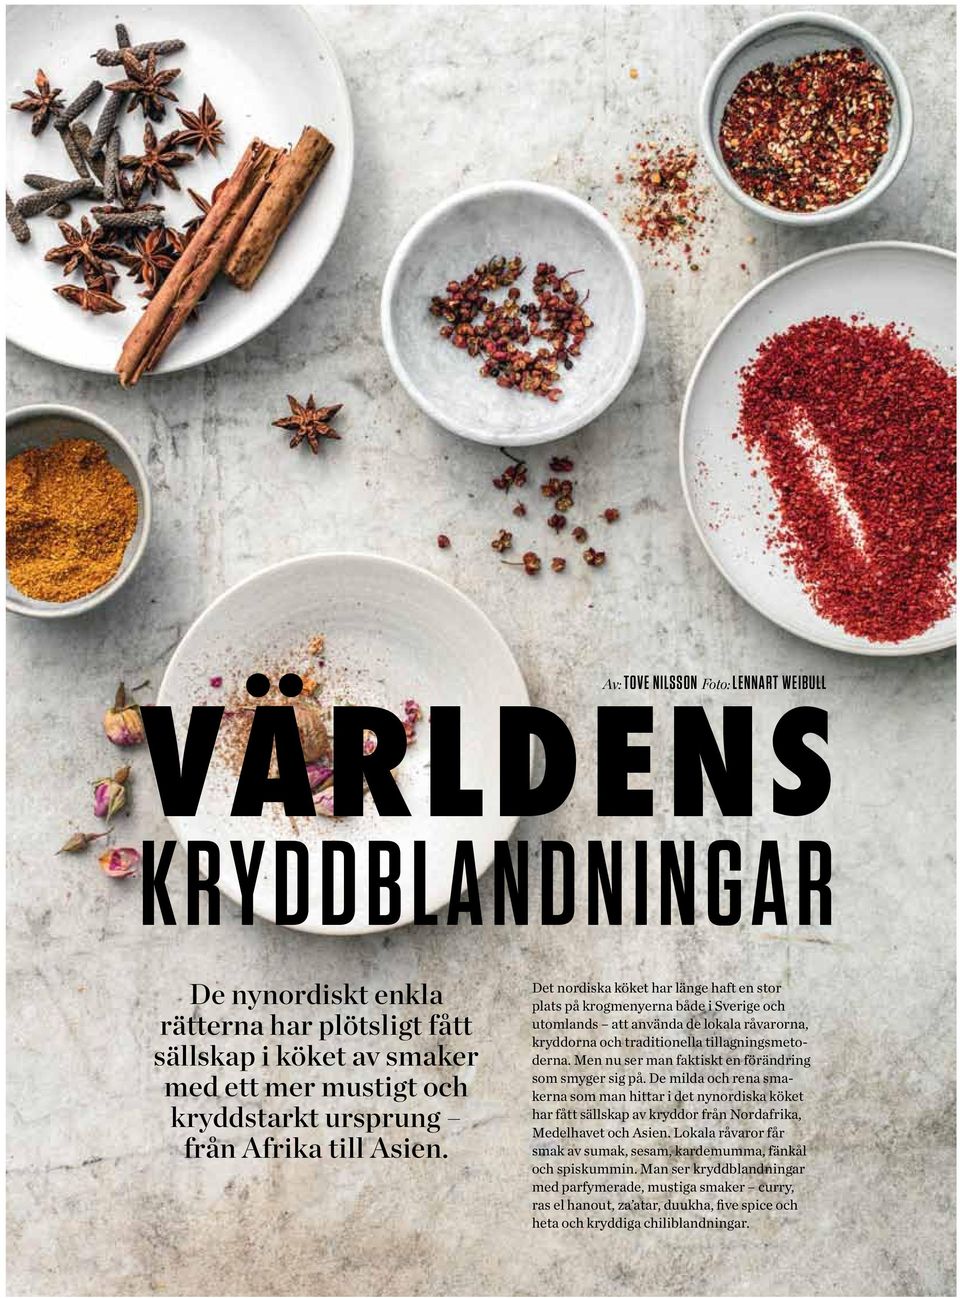 Det nordiska köket har länge haft en stor plats på krogmenyerna både i Sverige och utomlands att använda de lokala råvarorna, kryddorna och traditionella tillagningsmetoderna.